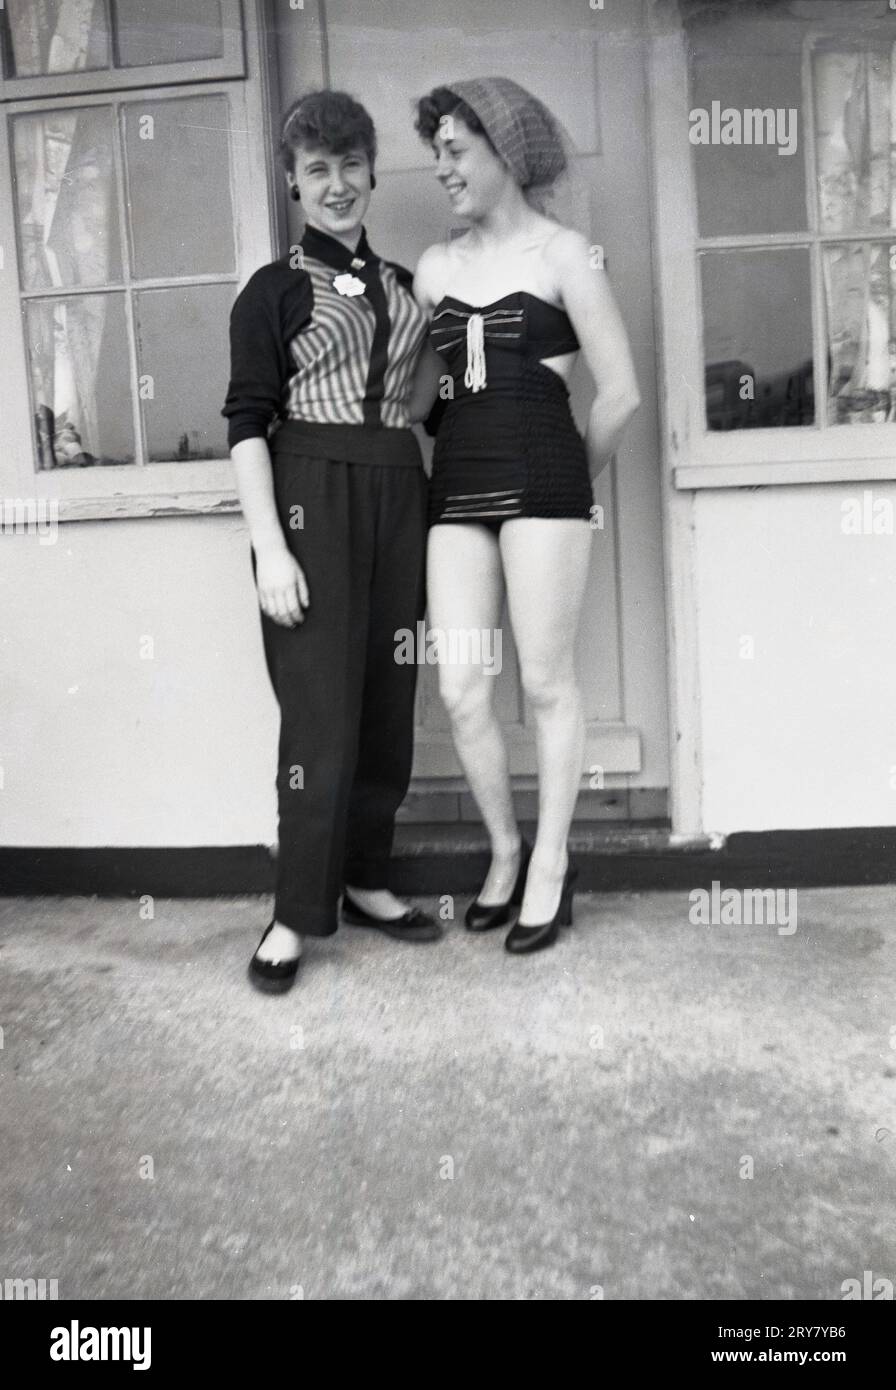 Années 1960, historique, deux jeunes femmes, sœurs, debout togther pour une photo à l'extérieur de leur chalet dans un camp de vacances, l'une d'elles portant un maillot de bain de l'époque, Angleterre, Royaume-Uni. Banque D'Images